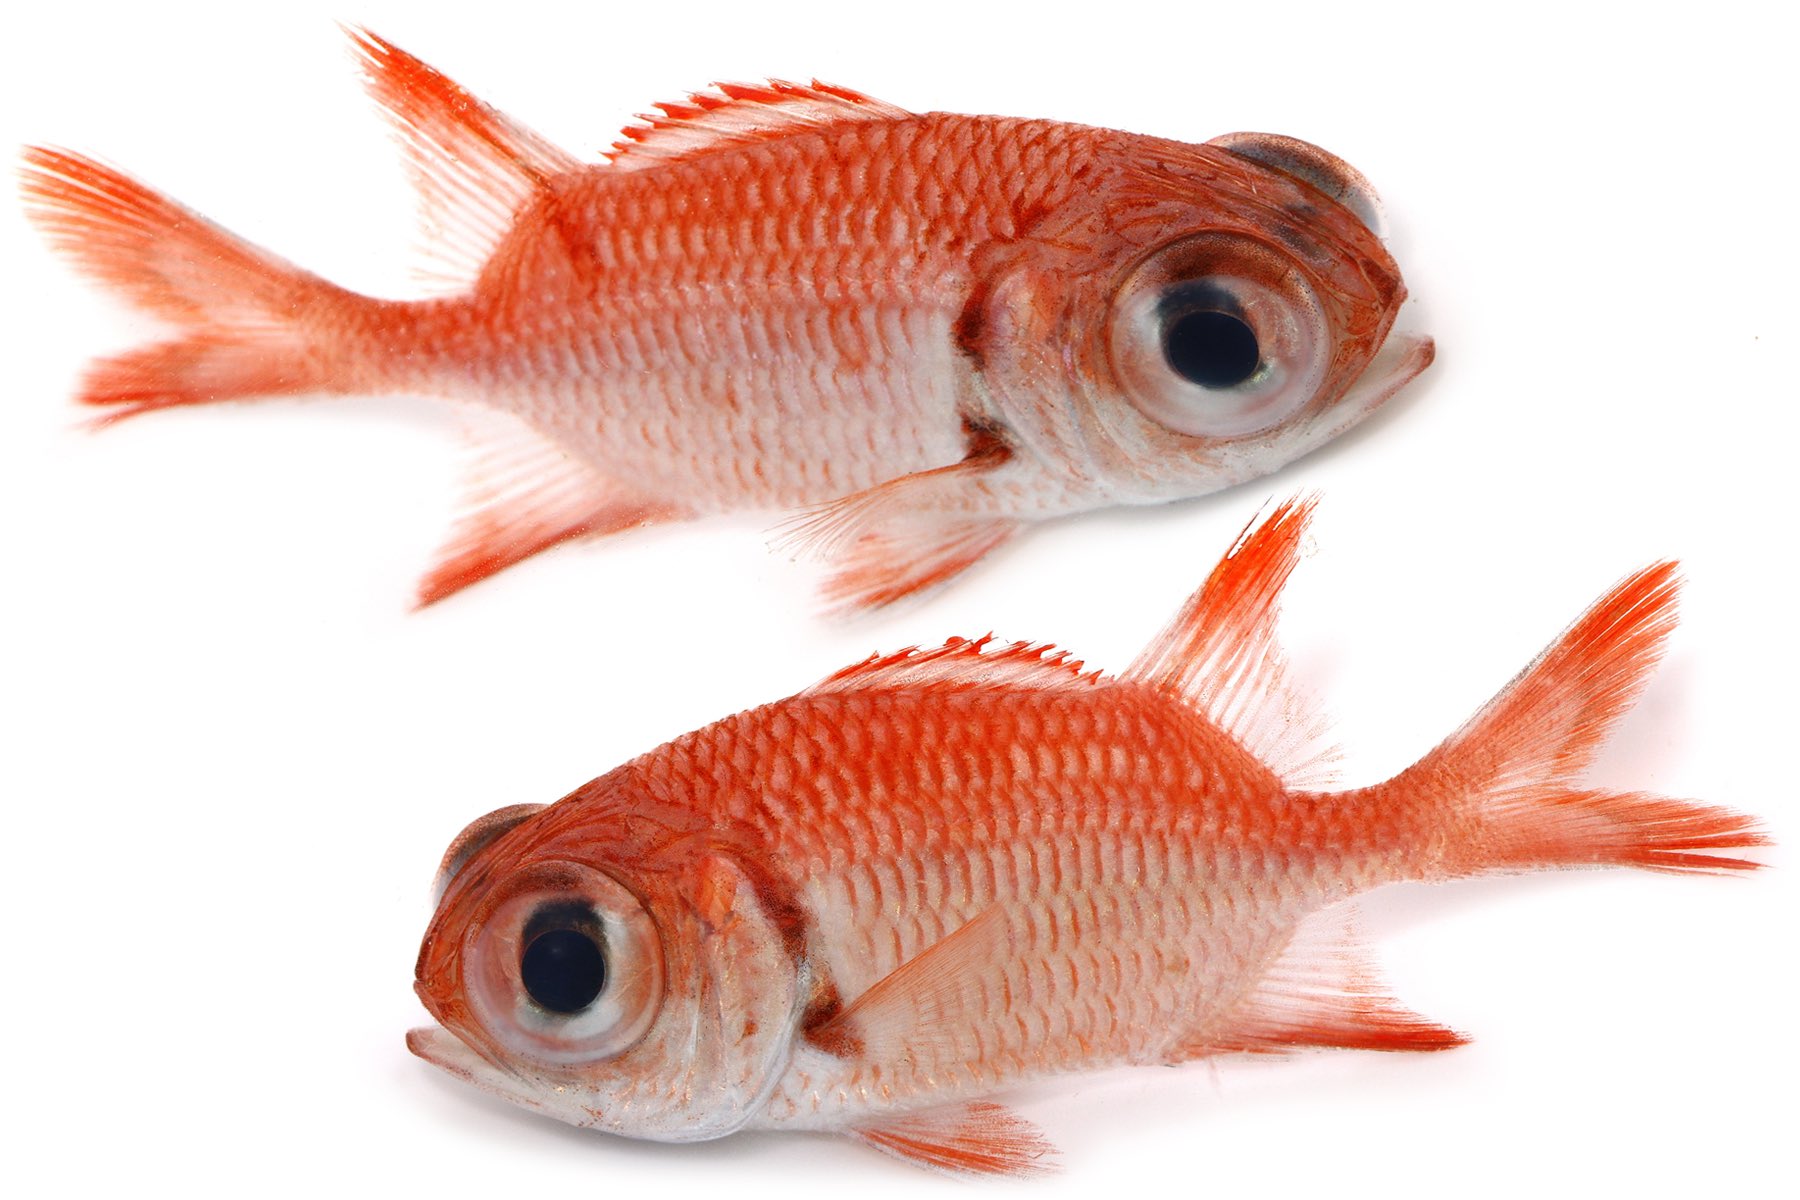 تويتر ゆうじ على تويتر 沖縄夜磯で採集したやたら目の大きい赤い魚 金魚もしくはアカマツカサの仲間 あるいは金魚注意報のぎょぴちゃんの可能性もある 懐かしい T Co Udhsmem9cw